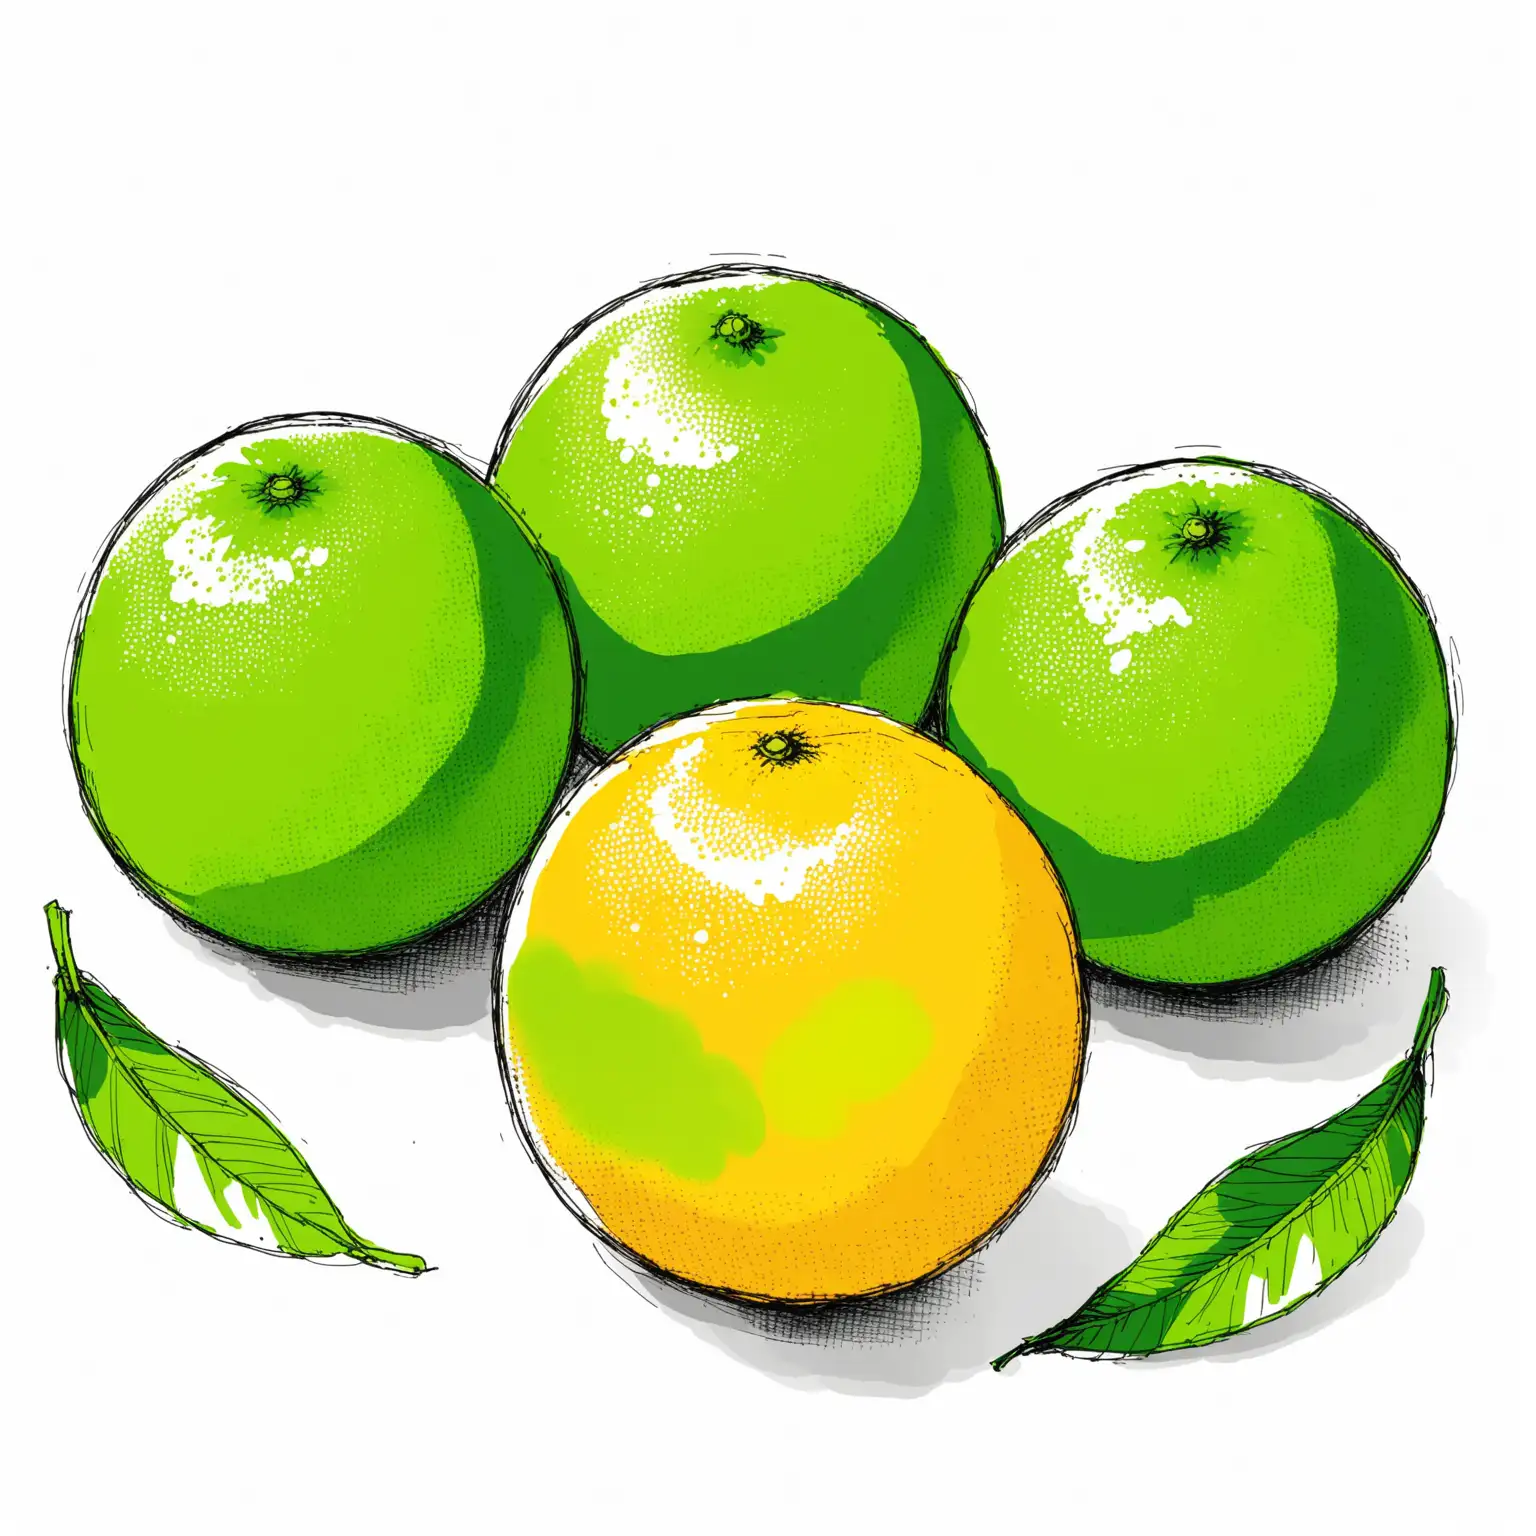 Three Green Oranges Sketch on White Background